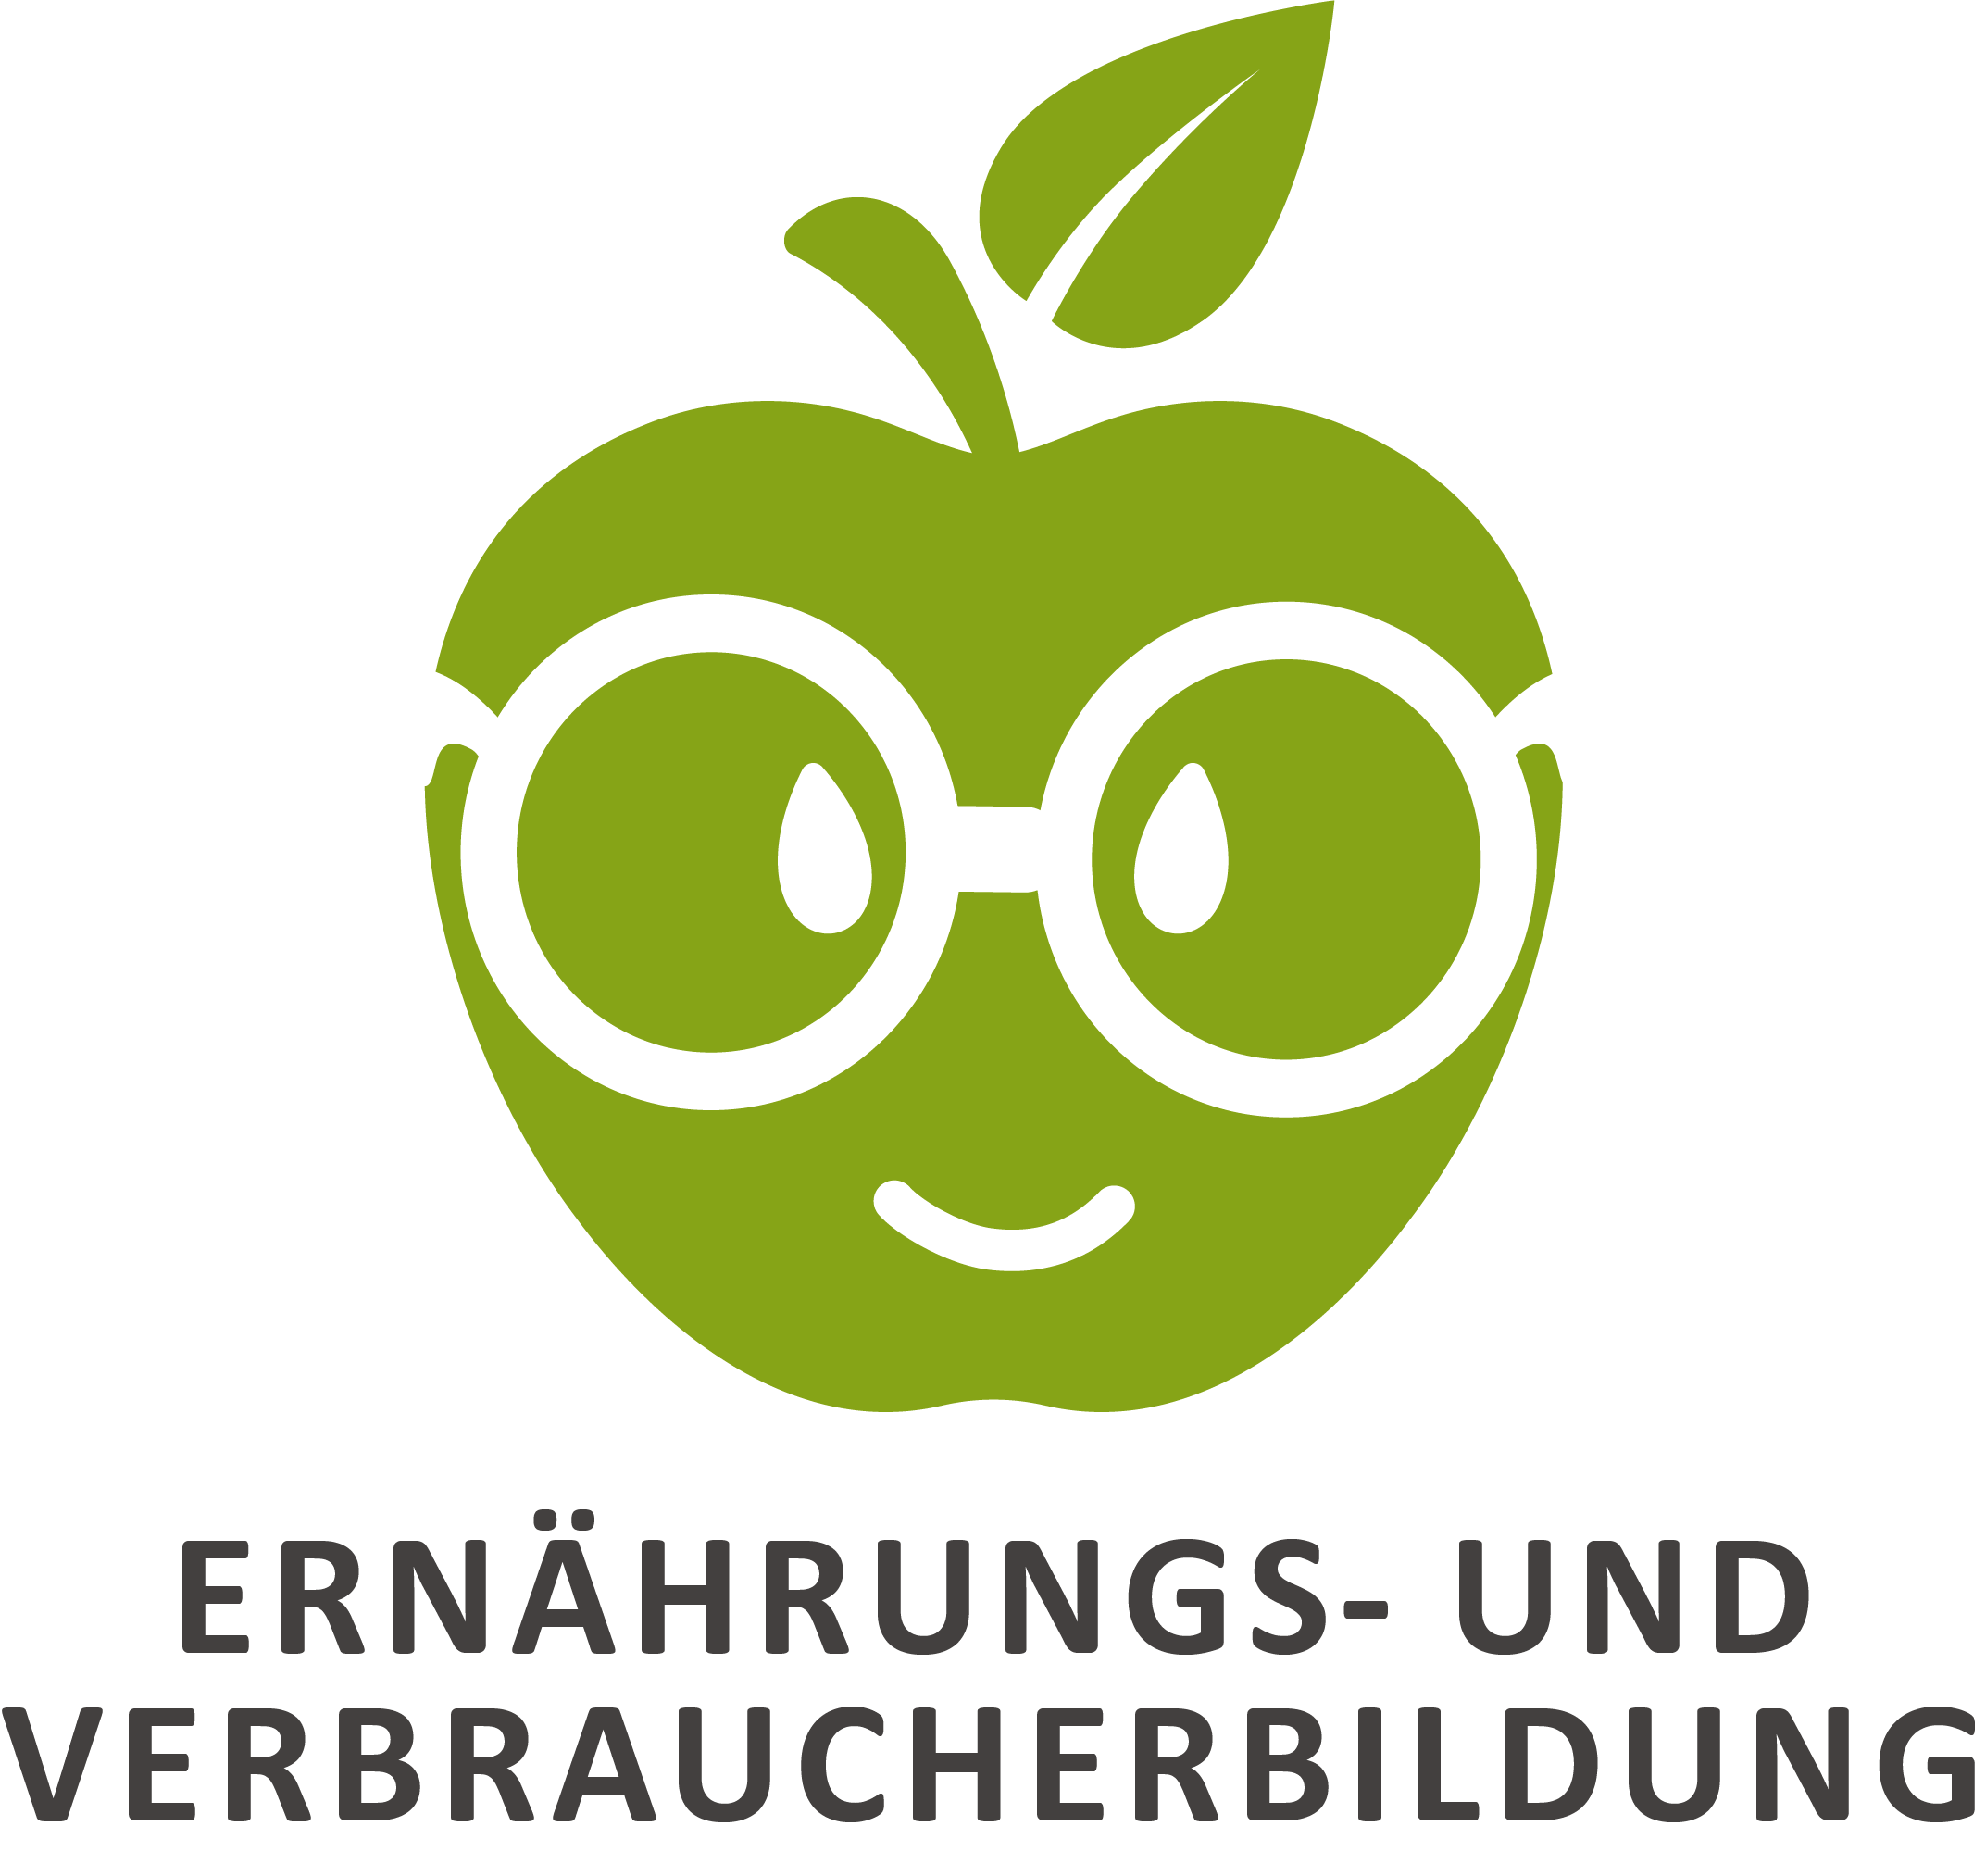  Zeichen zur Unterschriftenaktion für ein Schulfach „Ernährungs- und Verbraucherbildung“ in Niedersachsen 